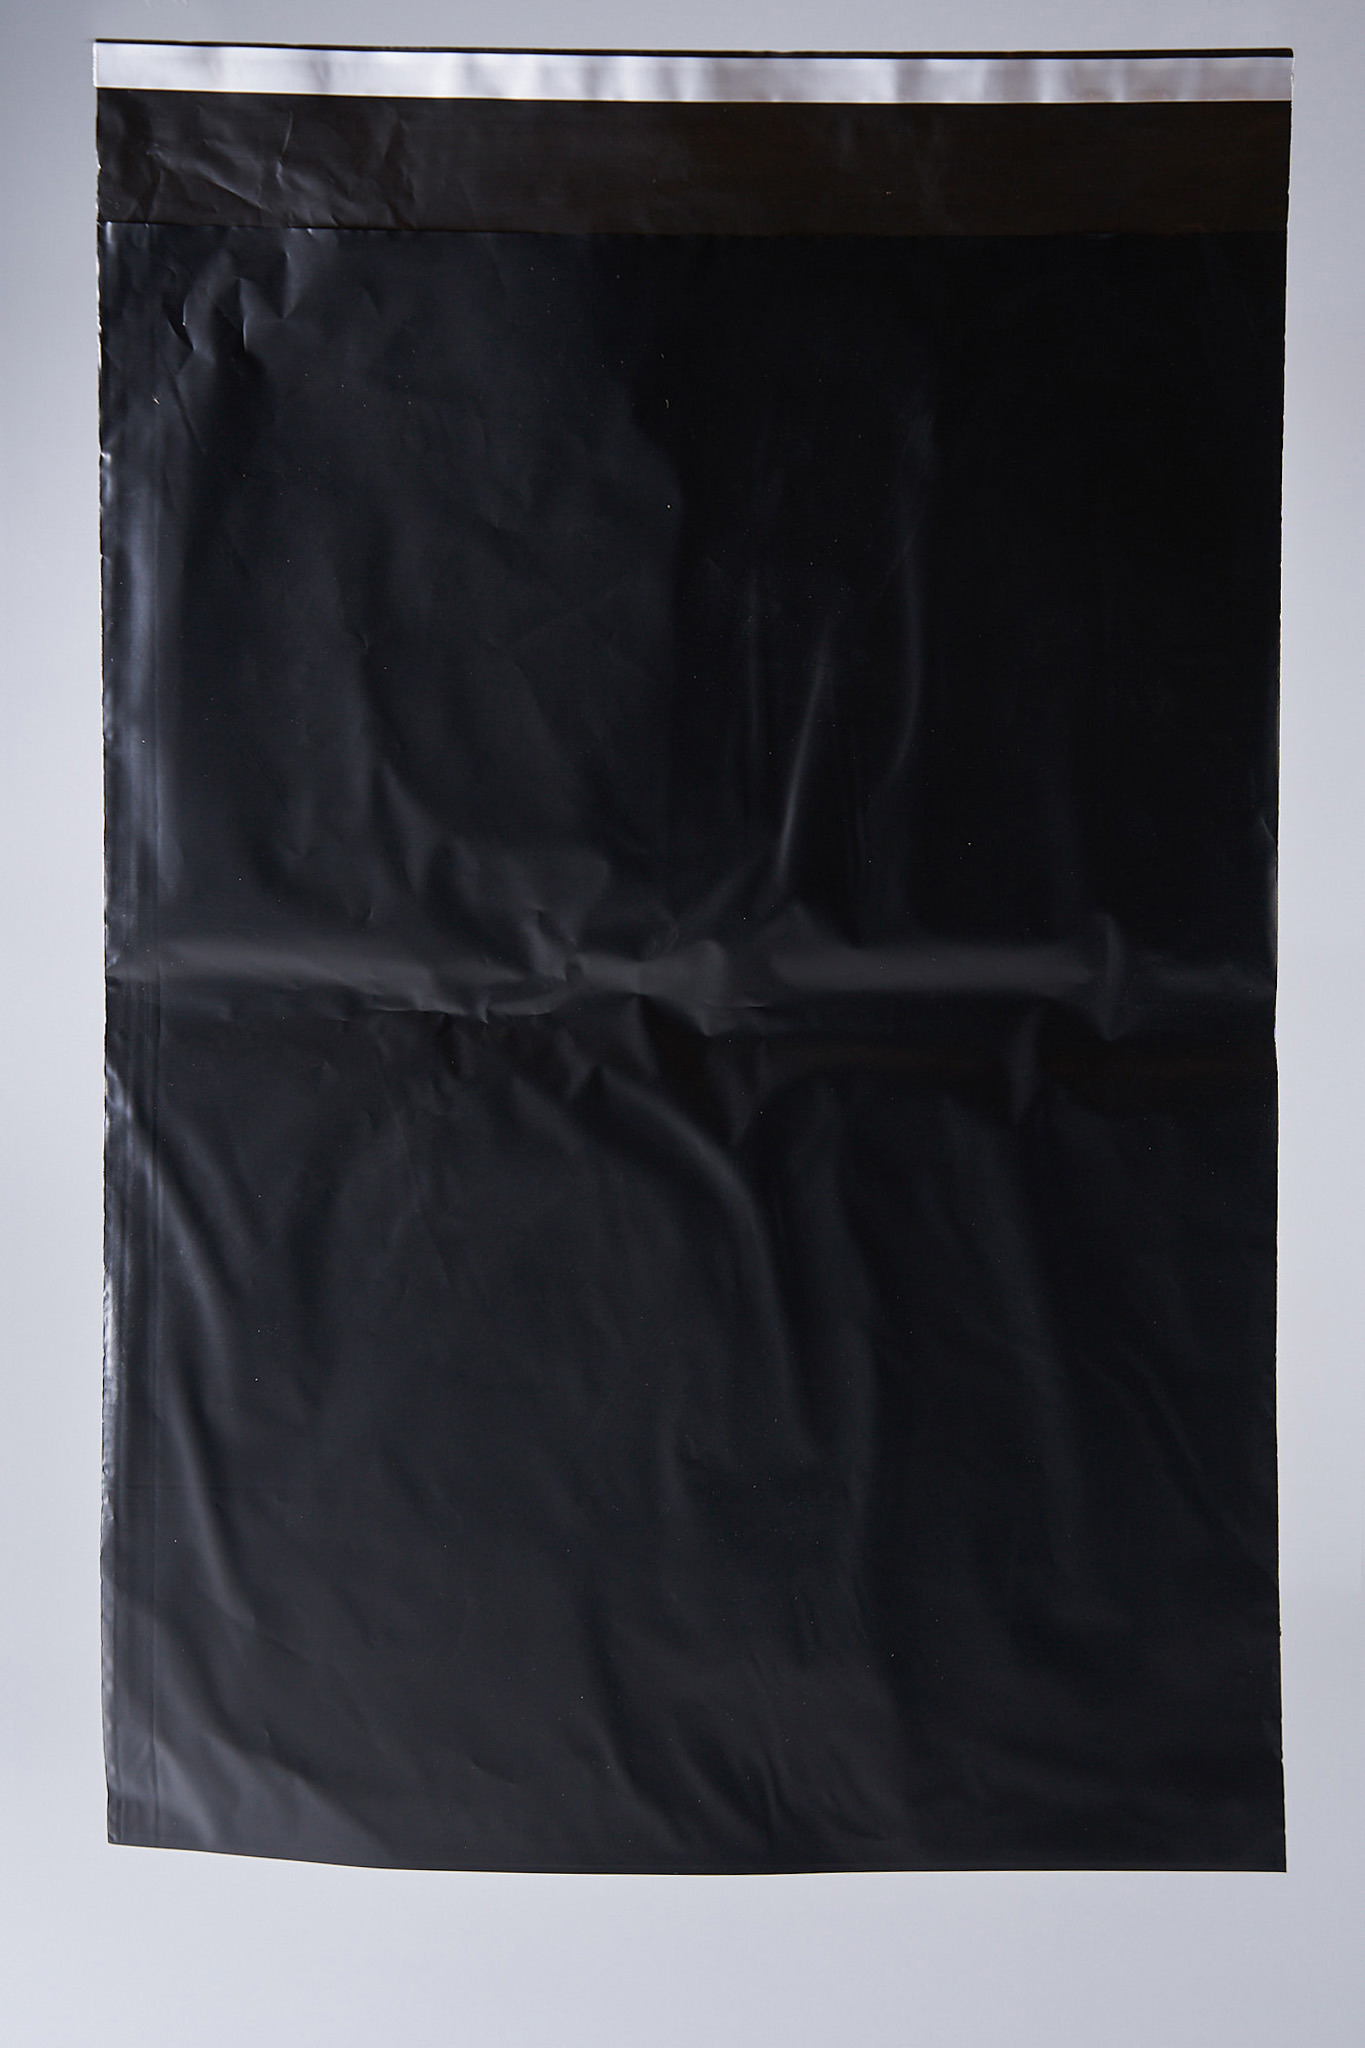 91017054 Пакет для компактного хранения 100 шт 34x46 см полиэтилен цвет черный STLM-0443012 PACK INNOVATION